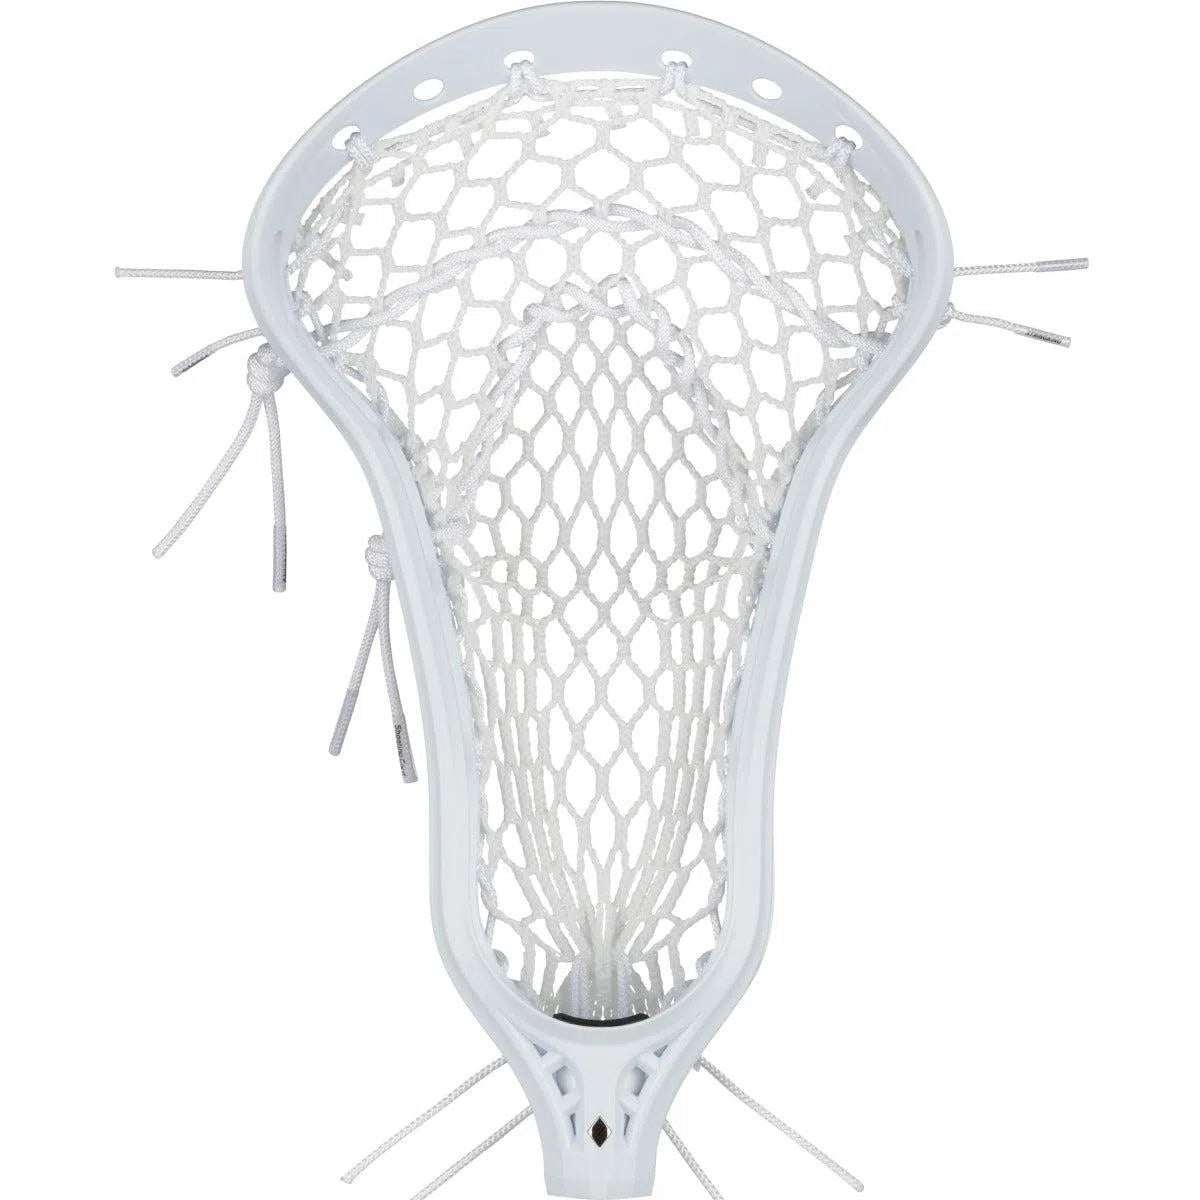 Stringking Mark 2 Offense Women's Lacrosse Head